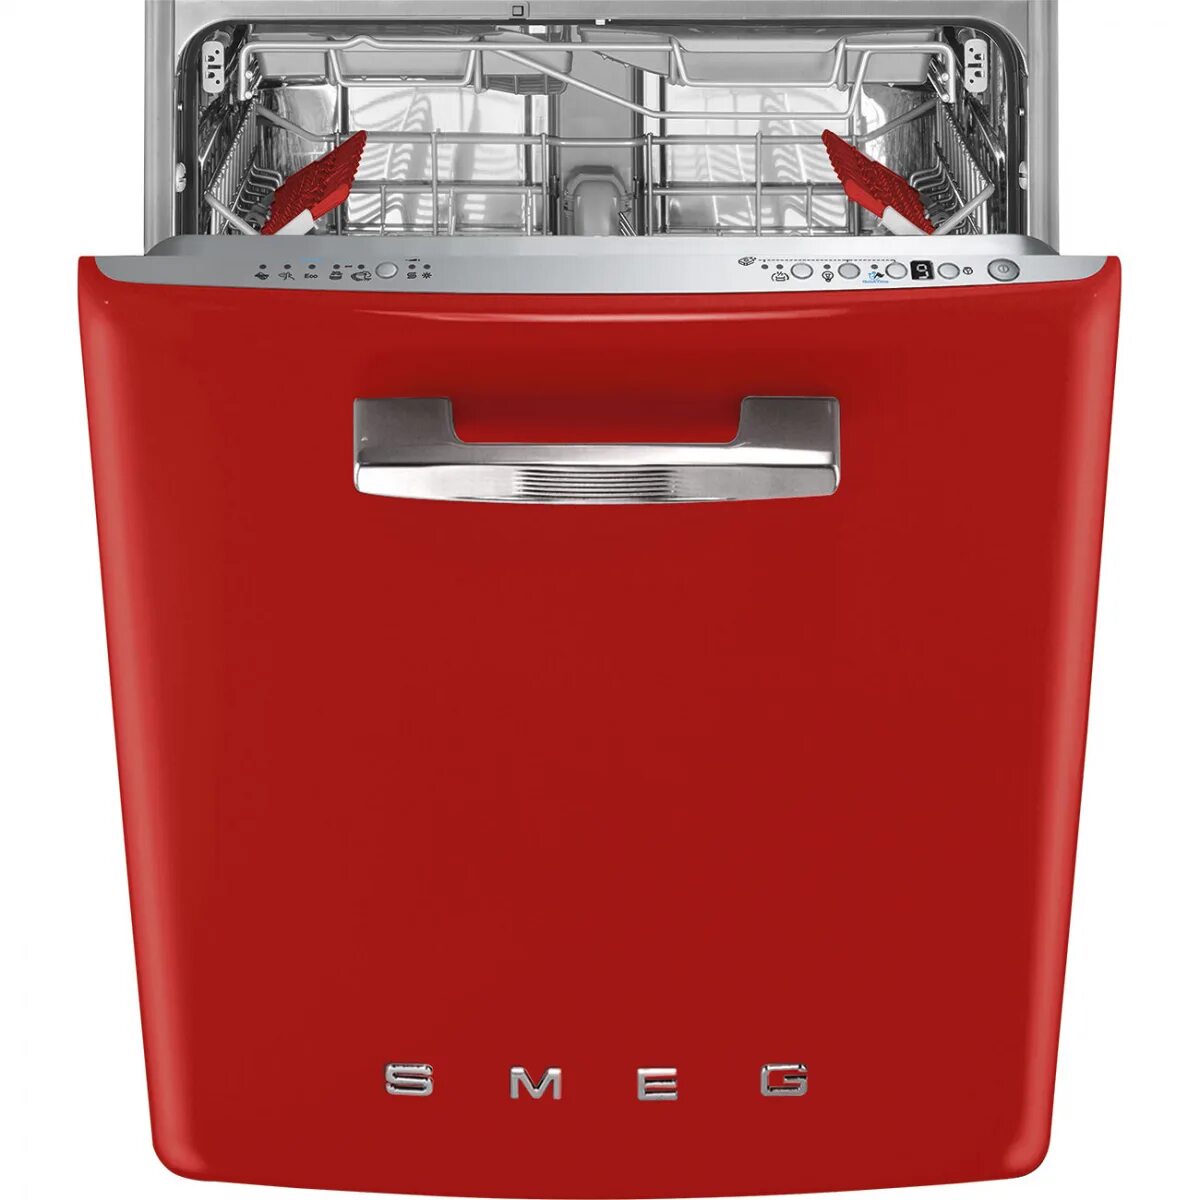 Посудомоечная машина купить в калининграде. Посудомоечная машина Smeg st2fabr2. Посудомоечная машина Smeg st2fabcr. Смег посудомоечная машина встраиваемая. Посудомоечная машина Смег 45 см встраиваемая.